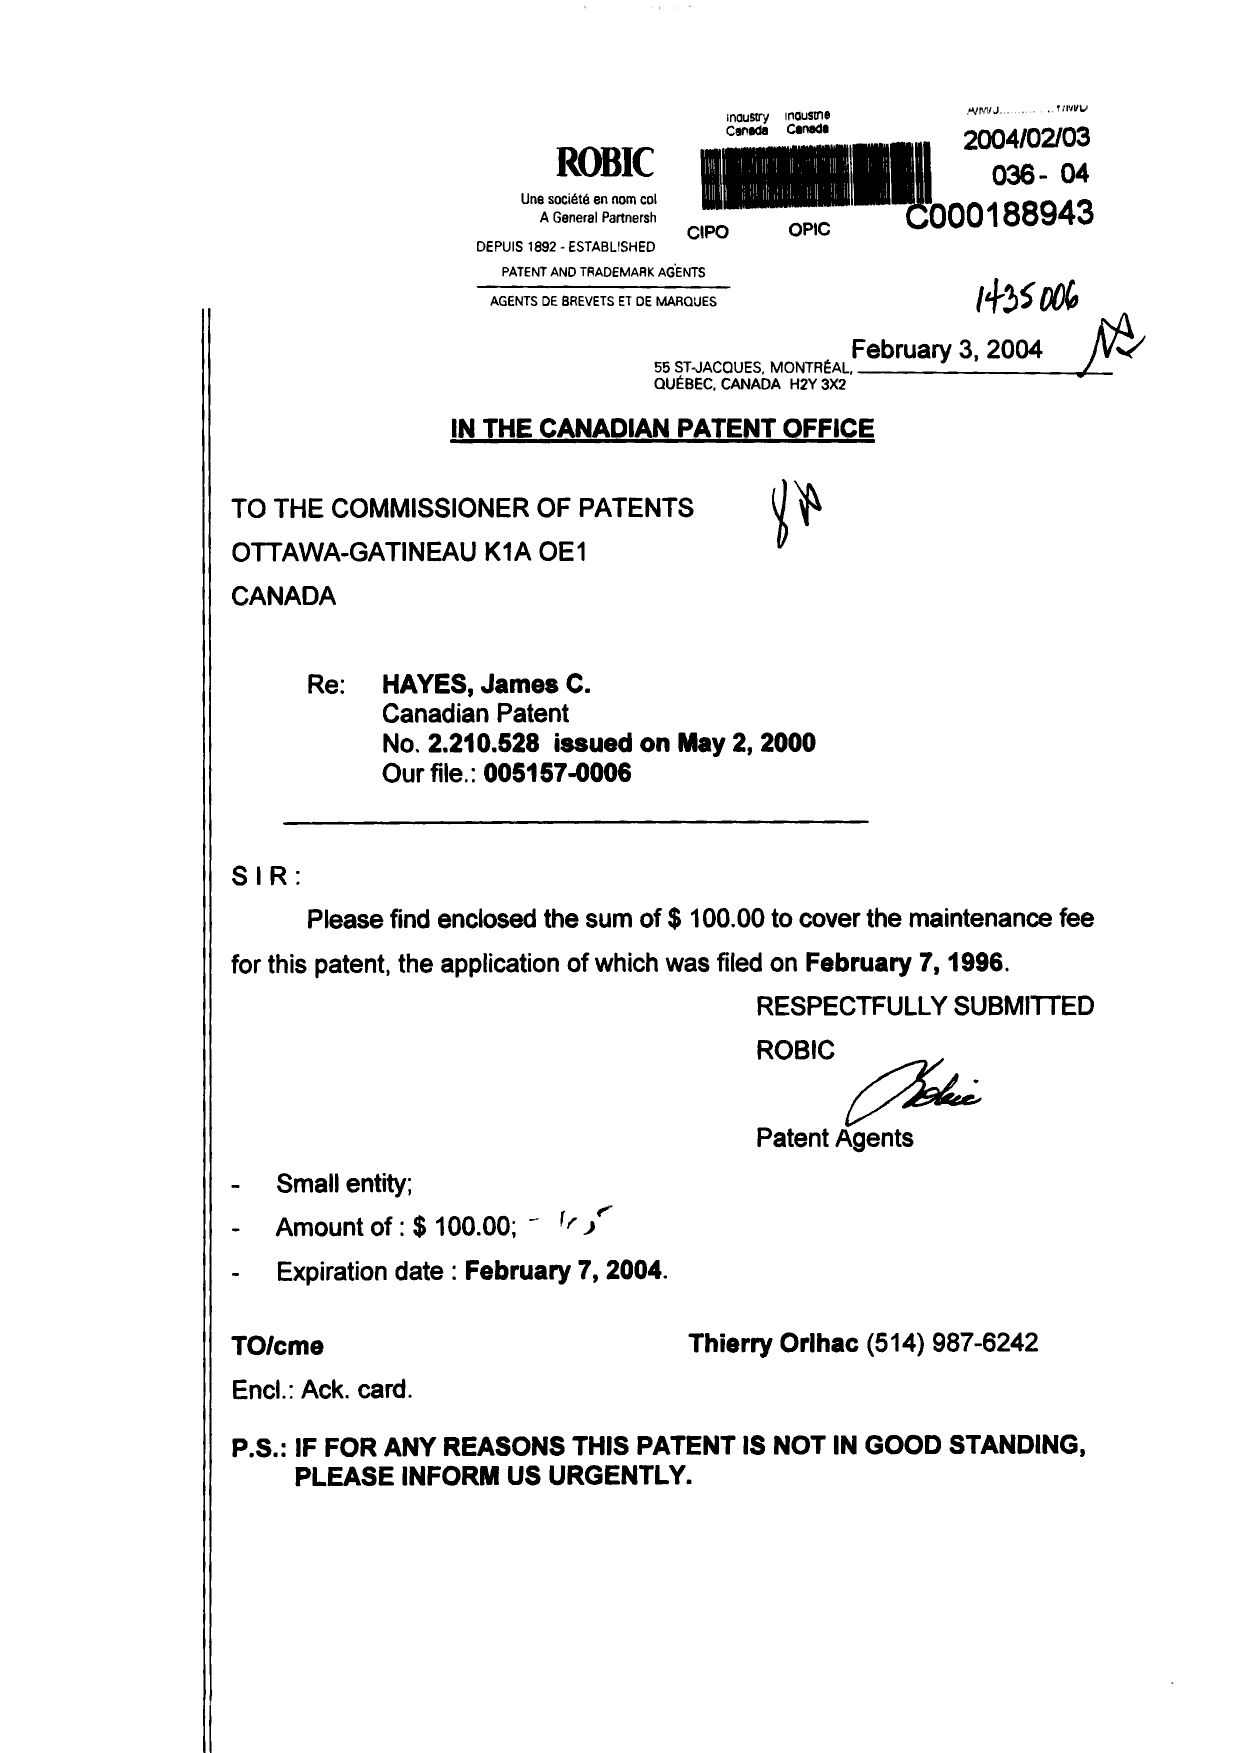 Document de brevet canadien 2210528. Taxes 20040203. Image 1 de 1